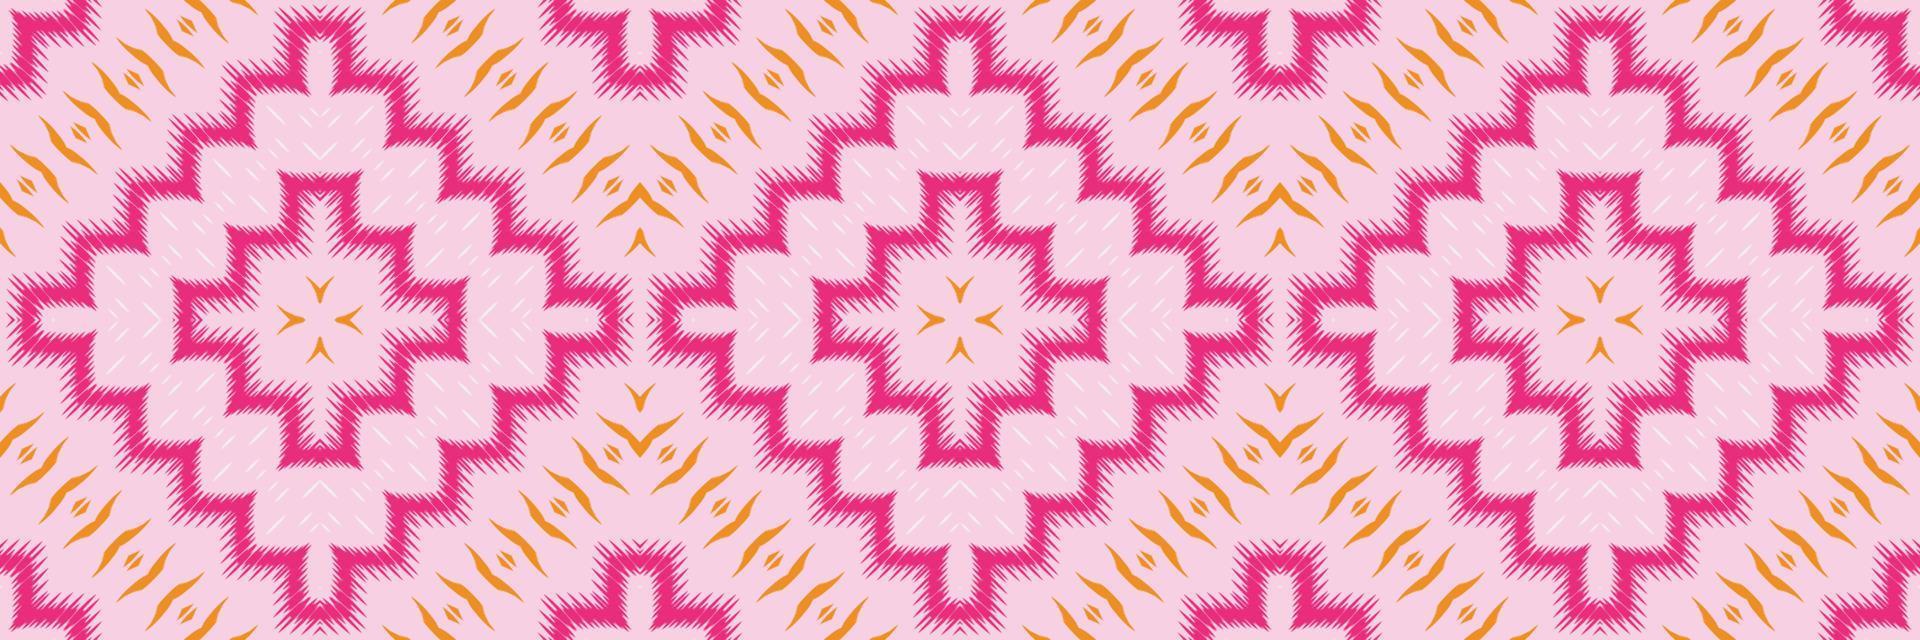 motivo textil batik ikat patrón sin costuras diseño de vector digital para imprimir saree kurti borde de tela símbolos de pincel muestras ropa de fiesta